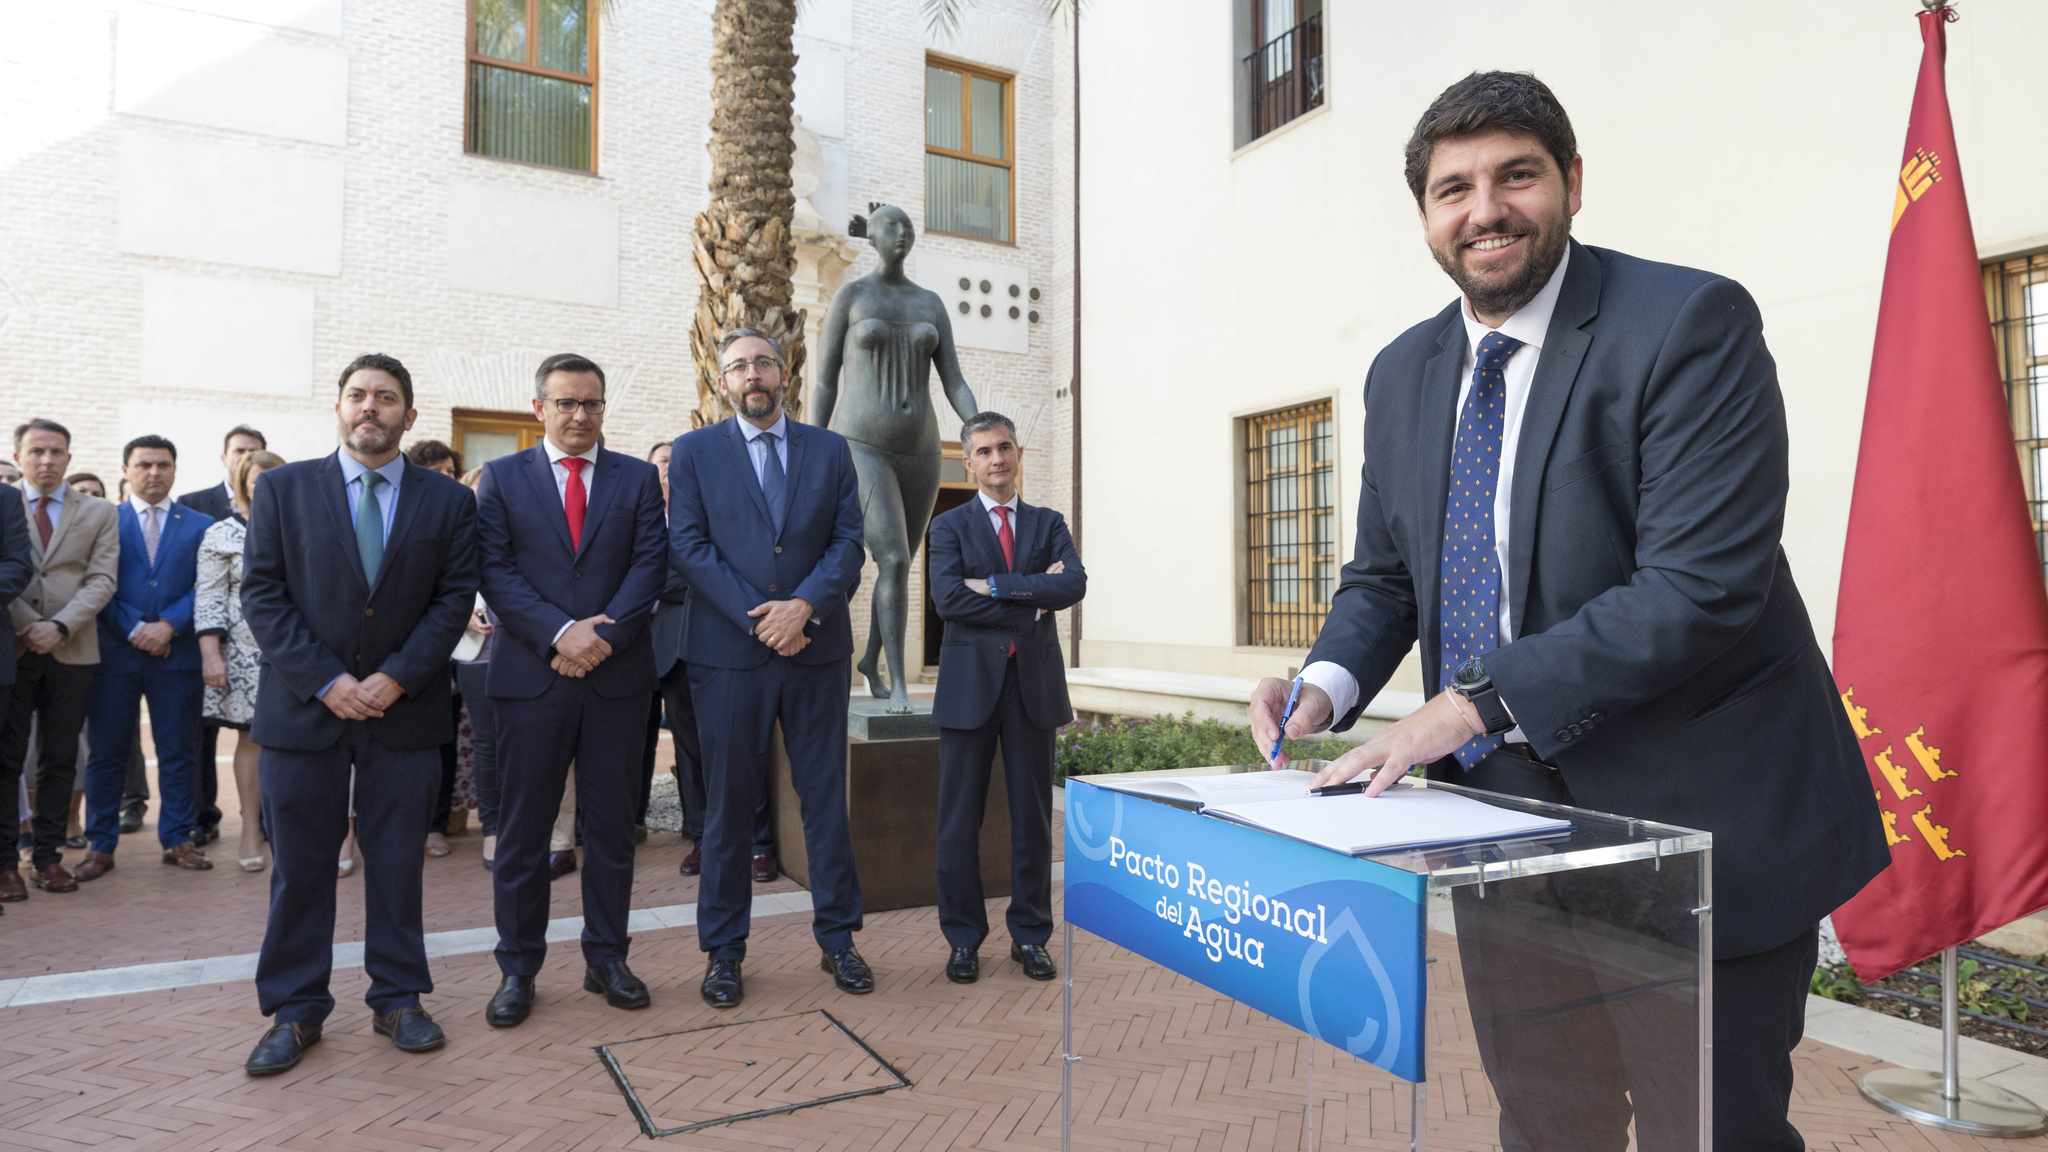 El jefe del Ejecutivo regional, Fernando López Miras, preside el acto de firma del Pacto Regional del Agua